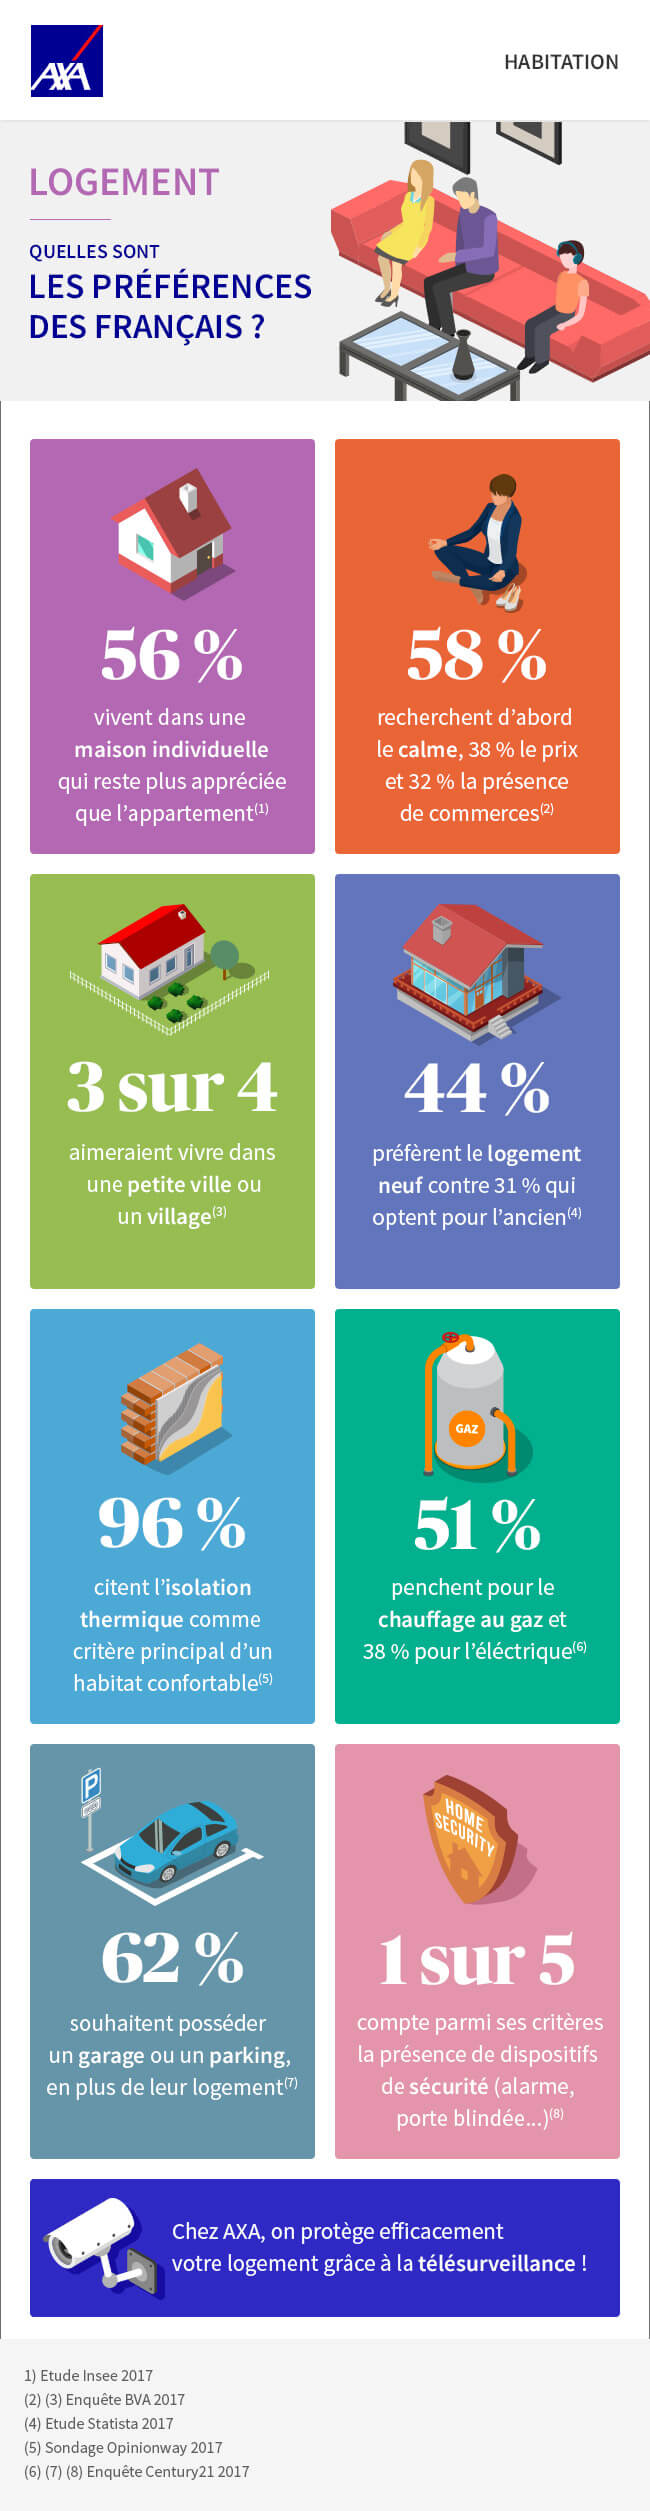 Infographie sur les préférences des Français en matière de logement